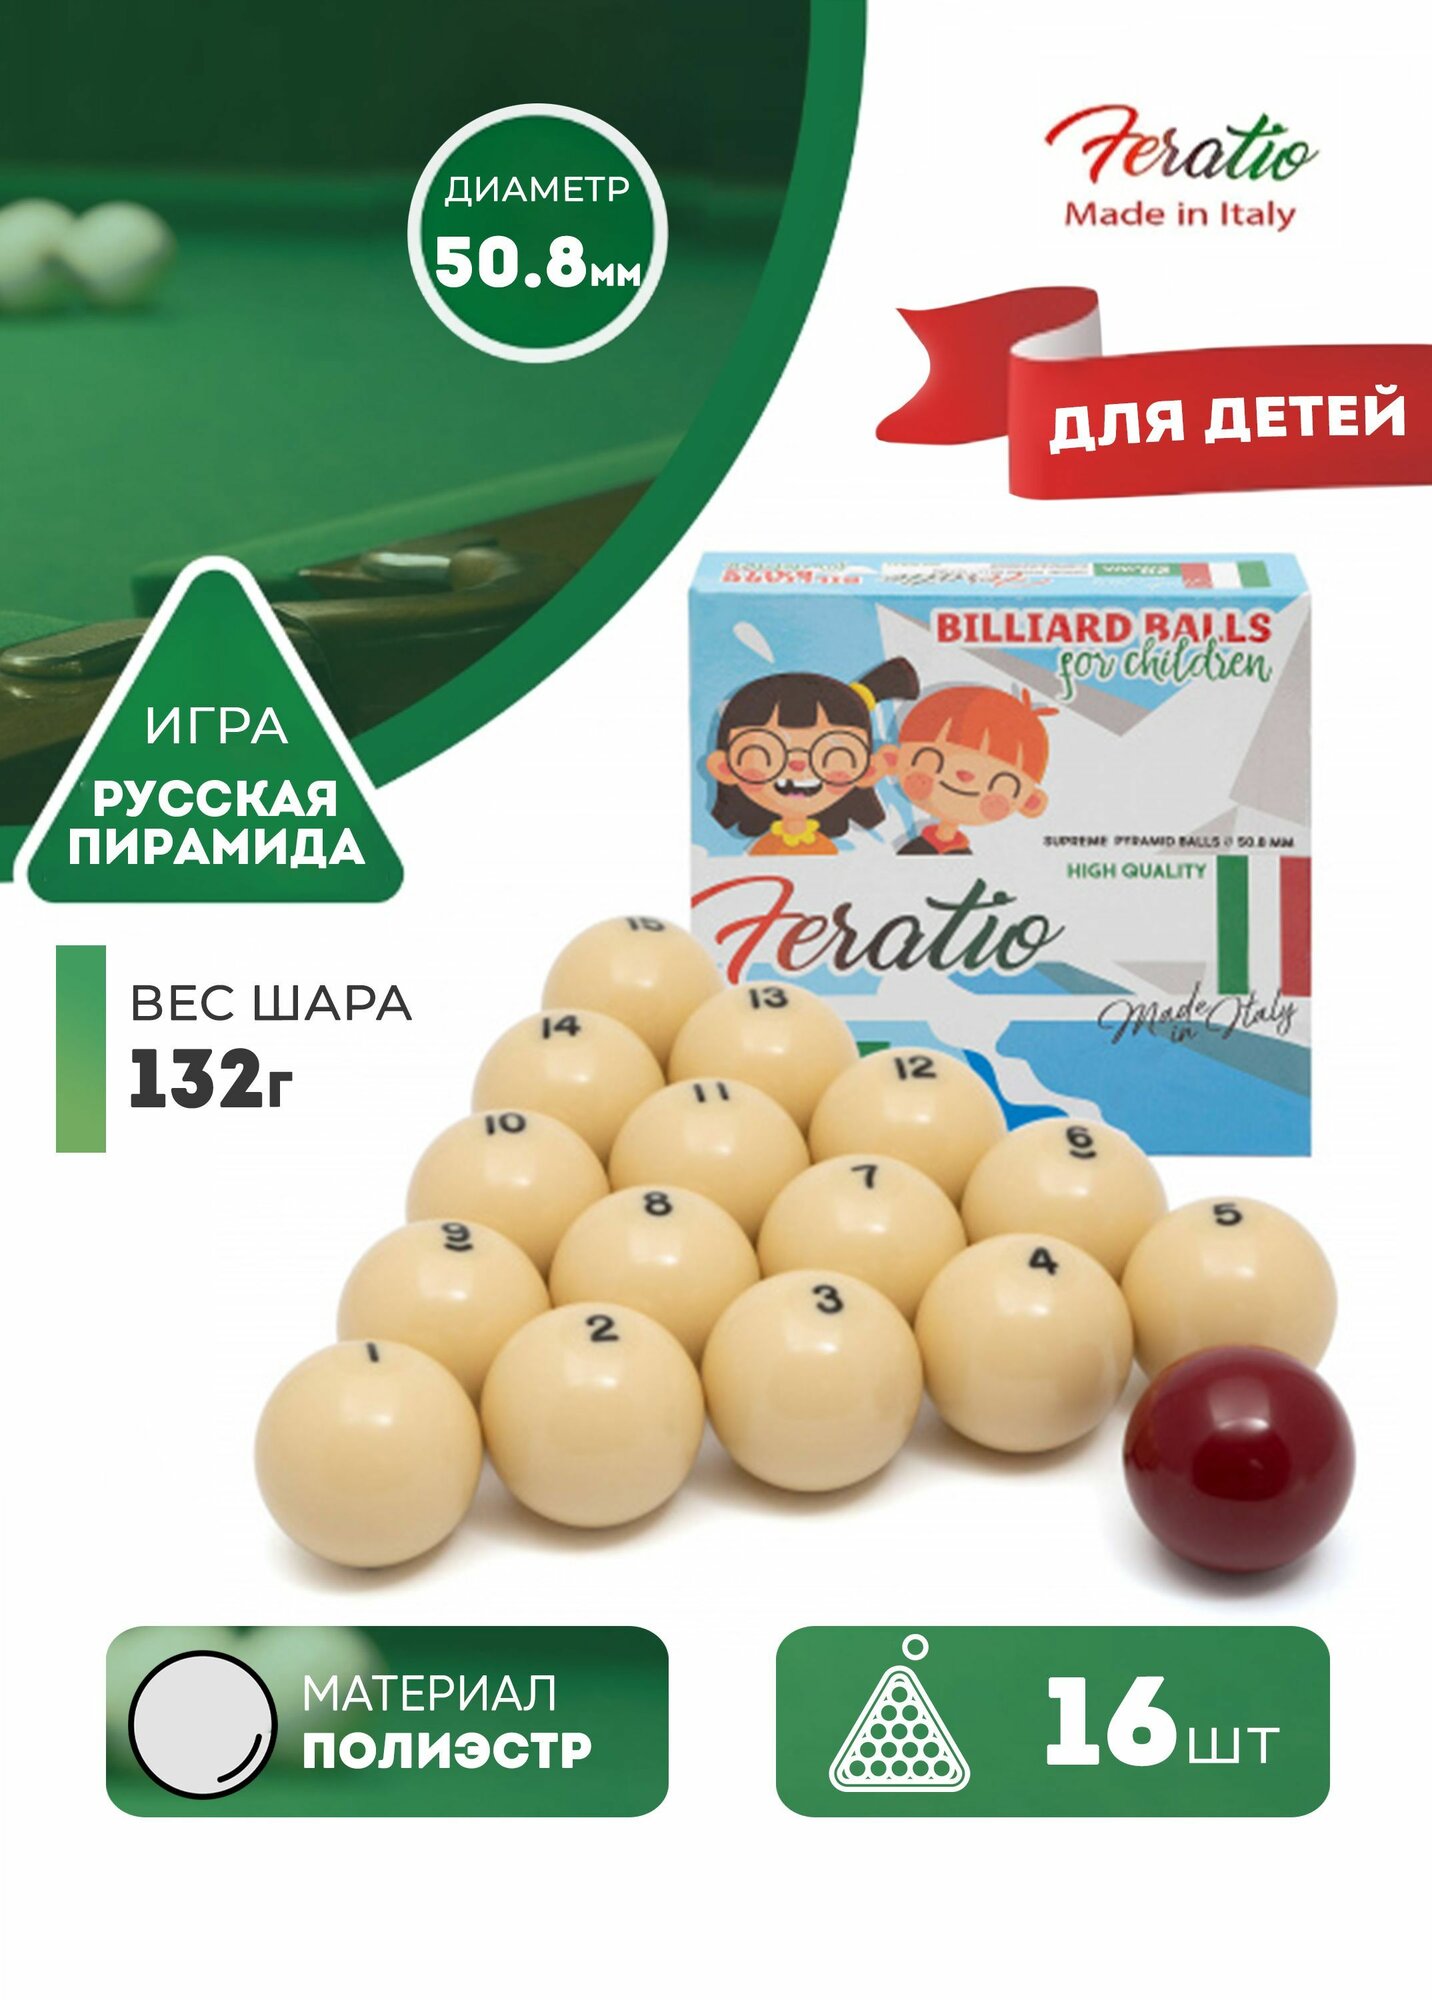 Детские бильярдные шары для русского бильярда Feratio 50,8 мм